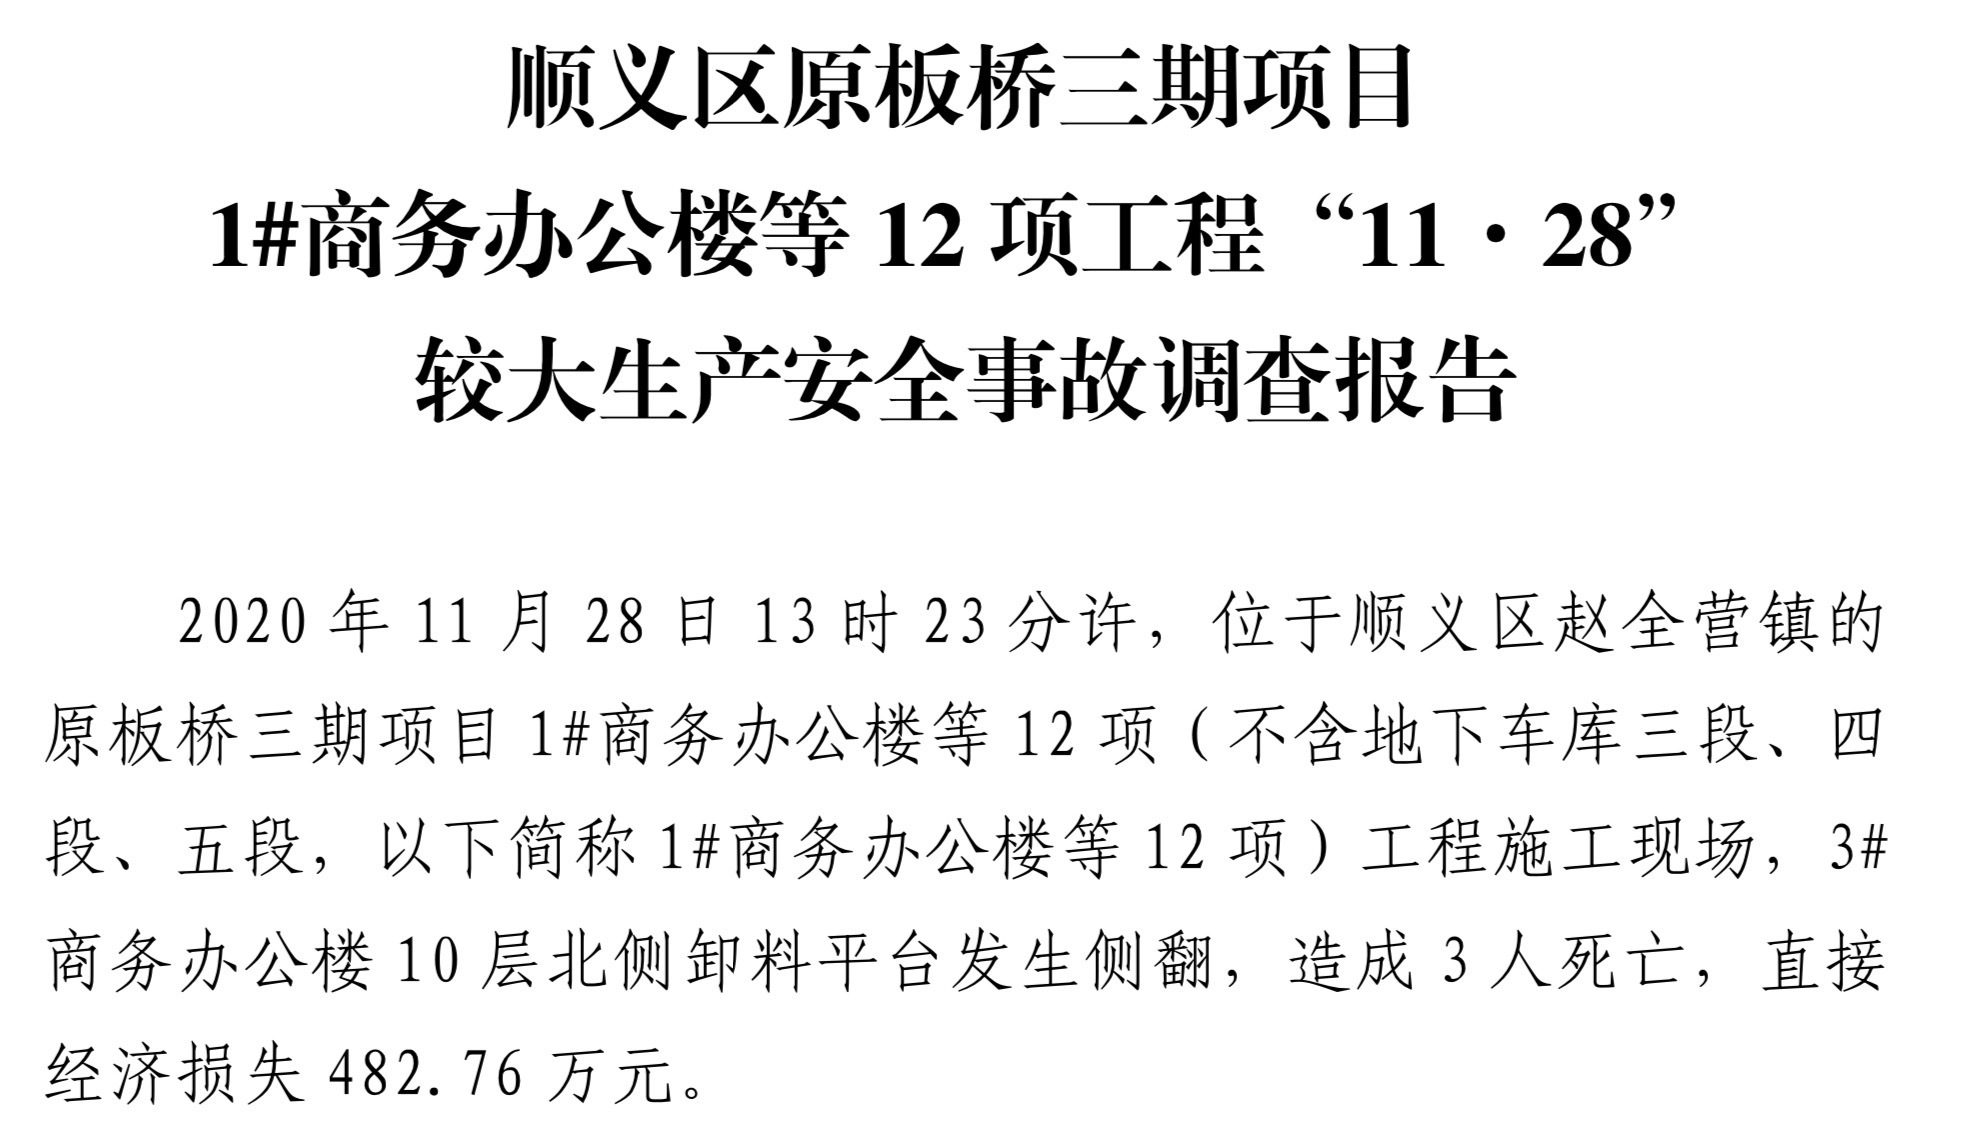 曾高喊“一亿一栋”的北京庄园开发商 因违规施工事故致死被罚737万